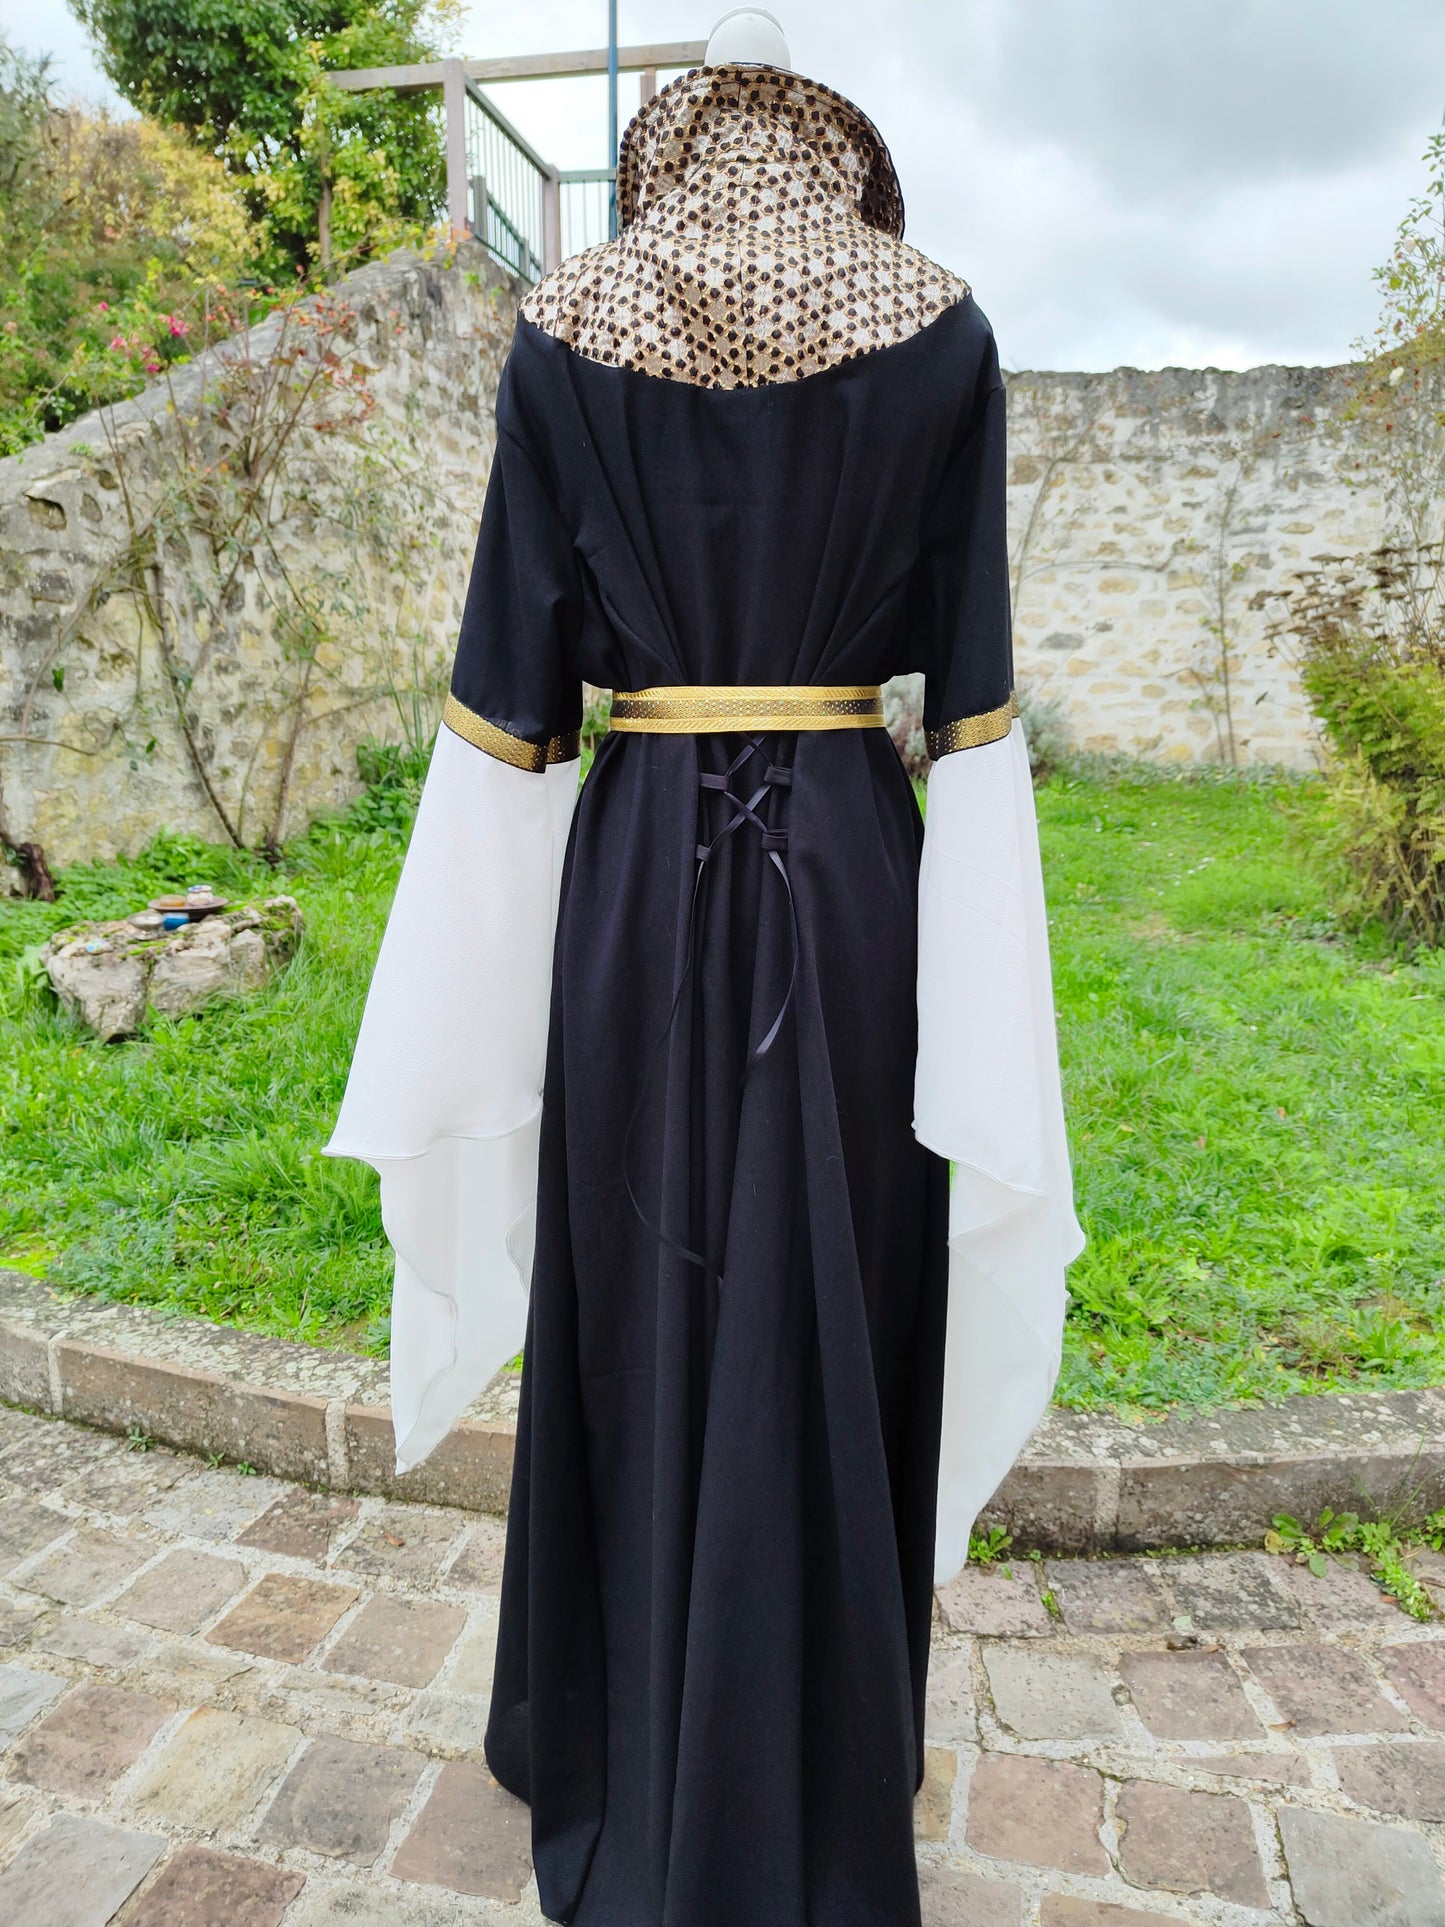 Robe médiévale ou Renaissance en lin noir et jacquard doré, avec ceinture